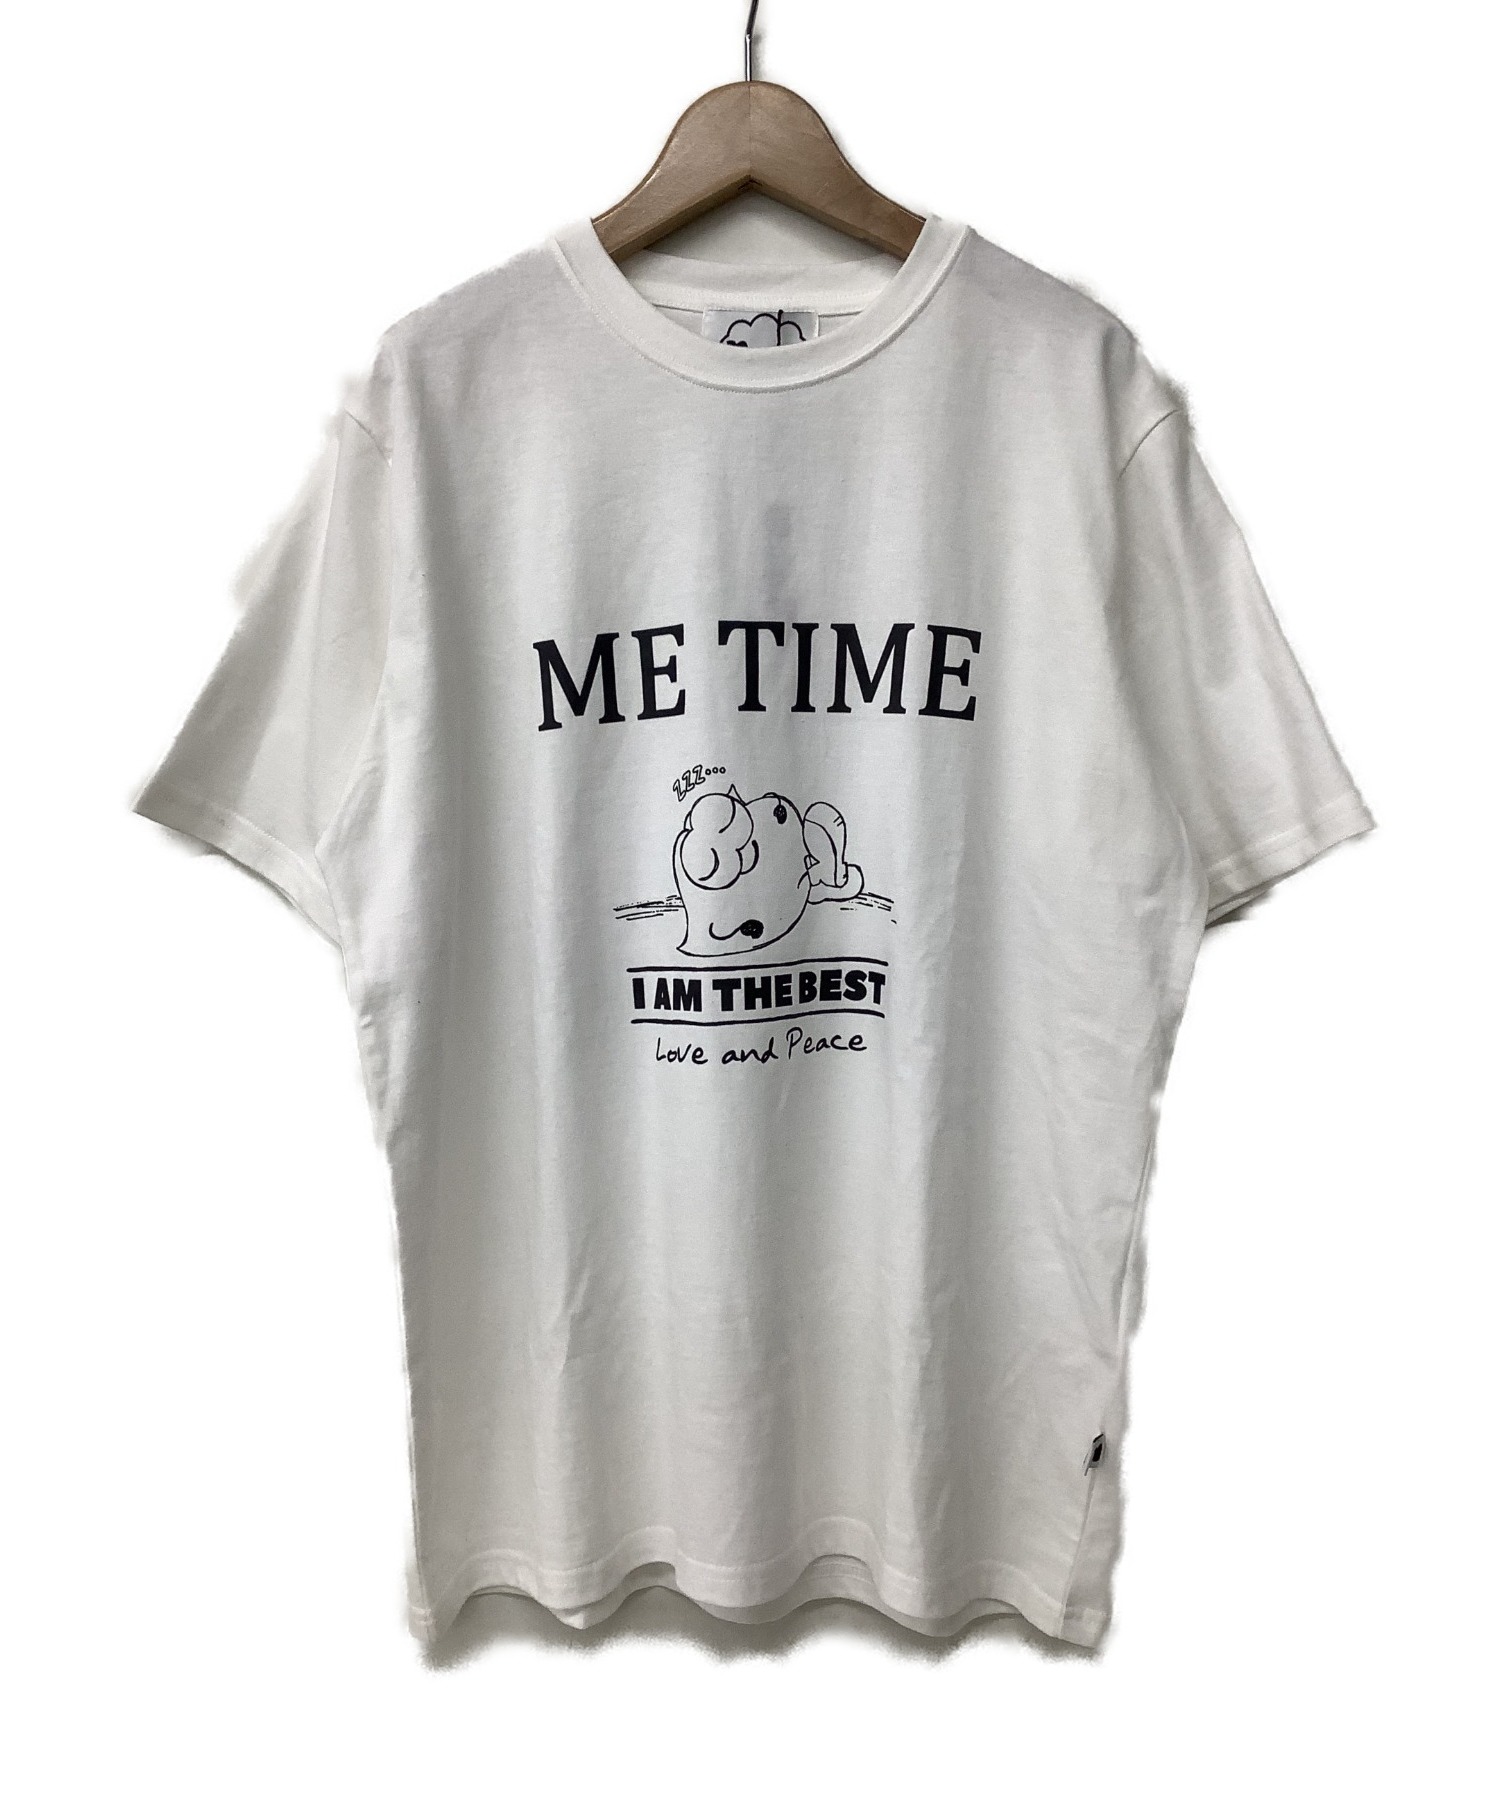 Naptime (ナップタイム) Tシャツ ホワイト サイズ:M